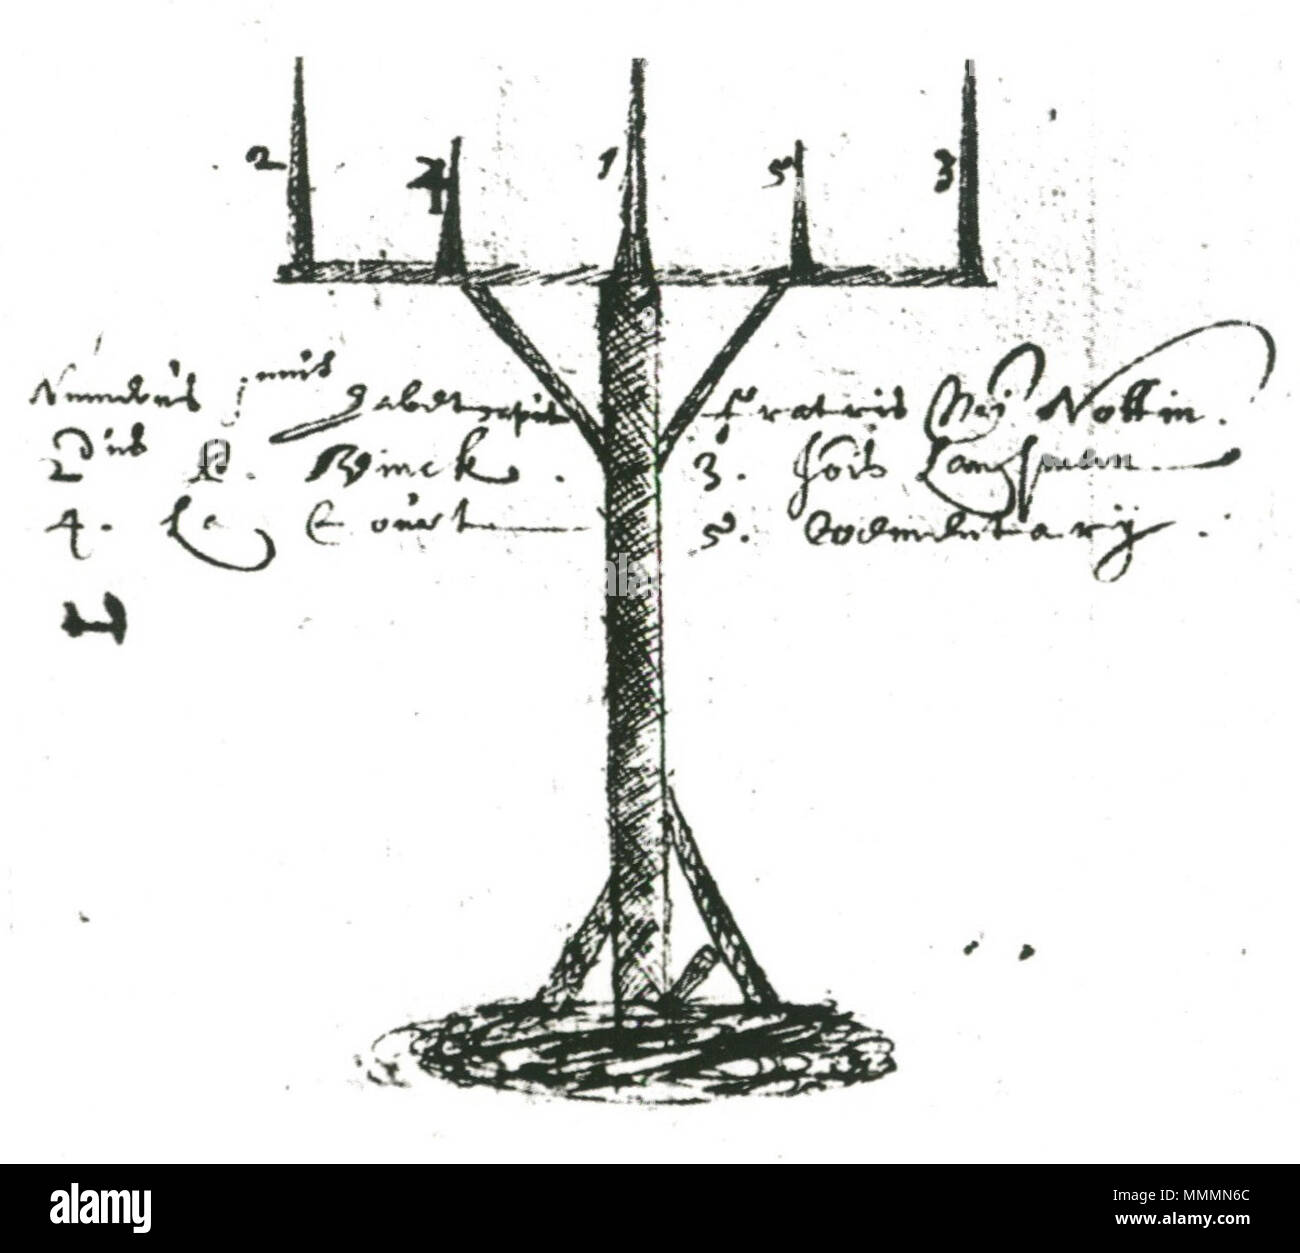 Ingles Dibujo Del Instrumento Que Se Utilizo En 1638 Para Mostrar